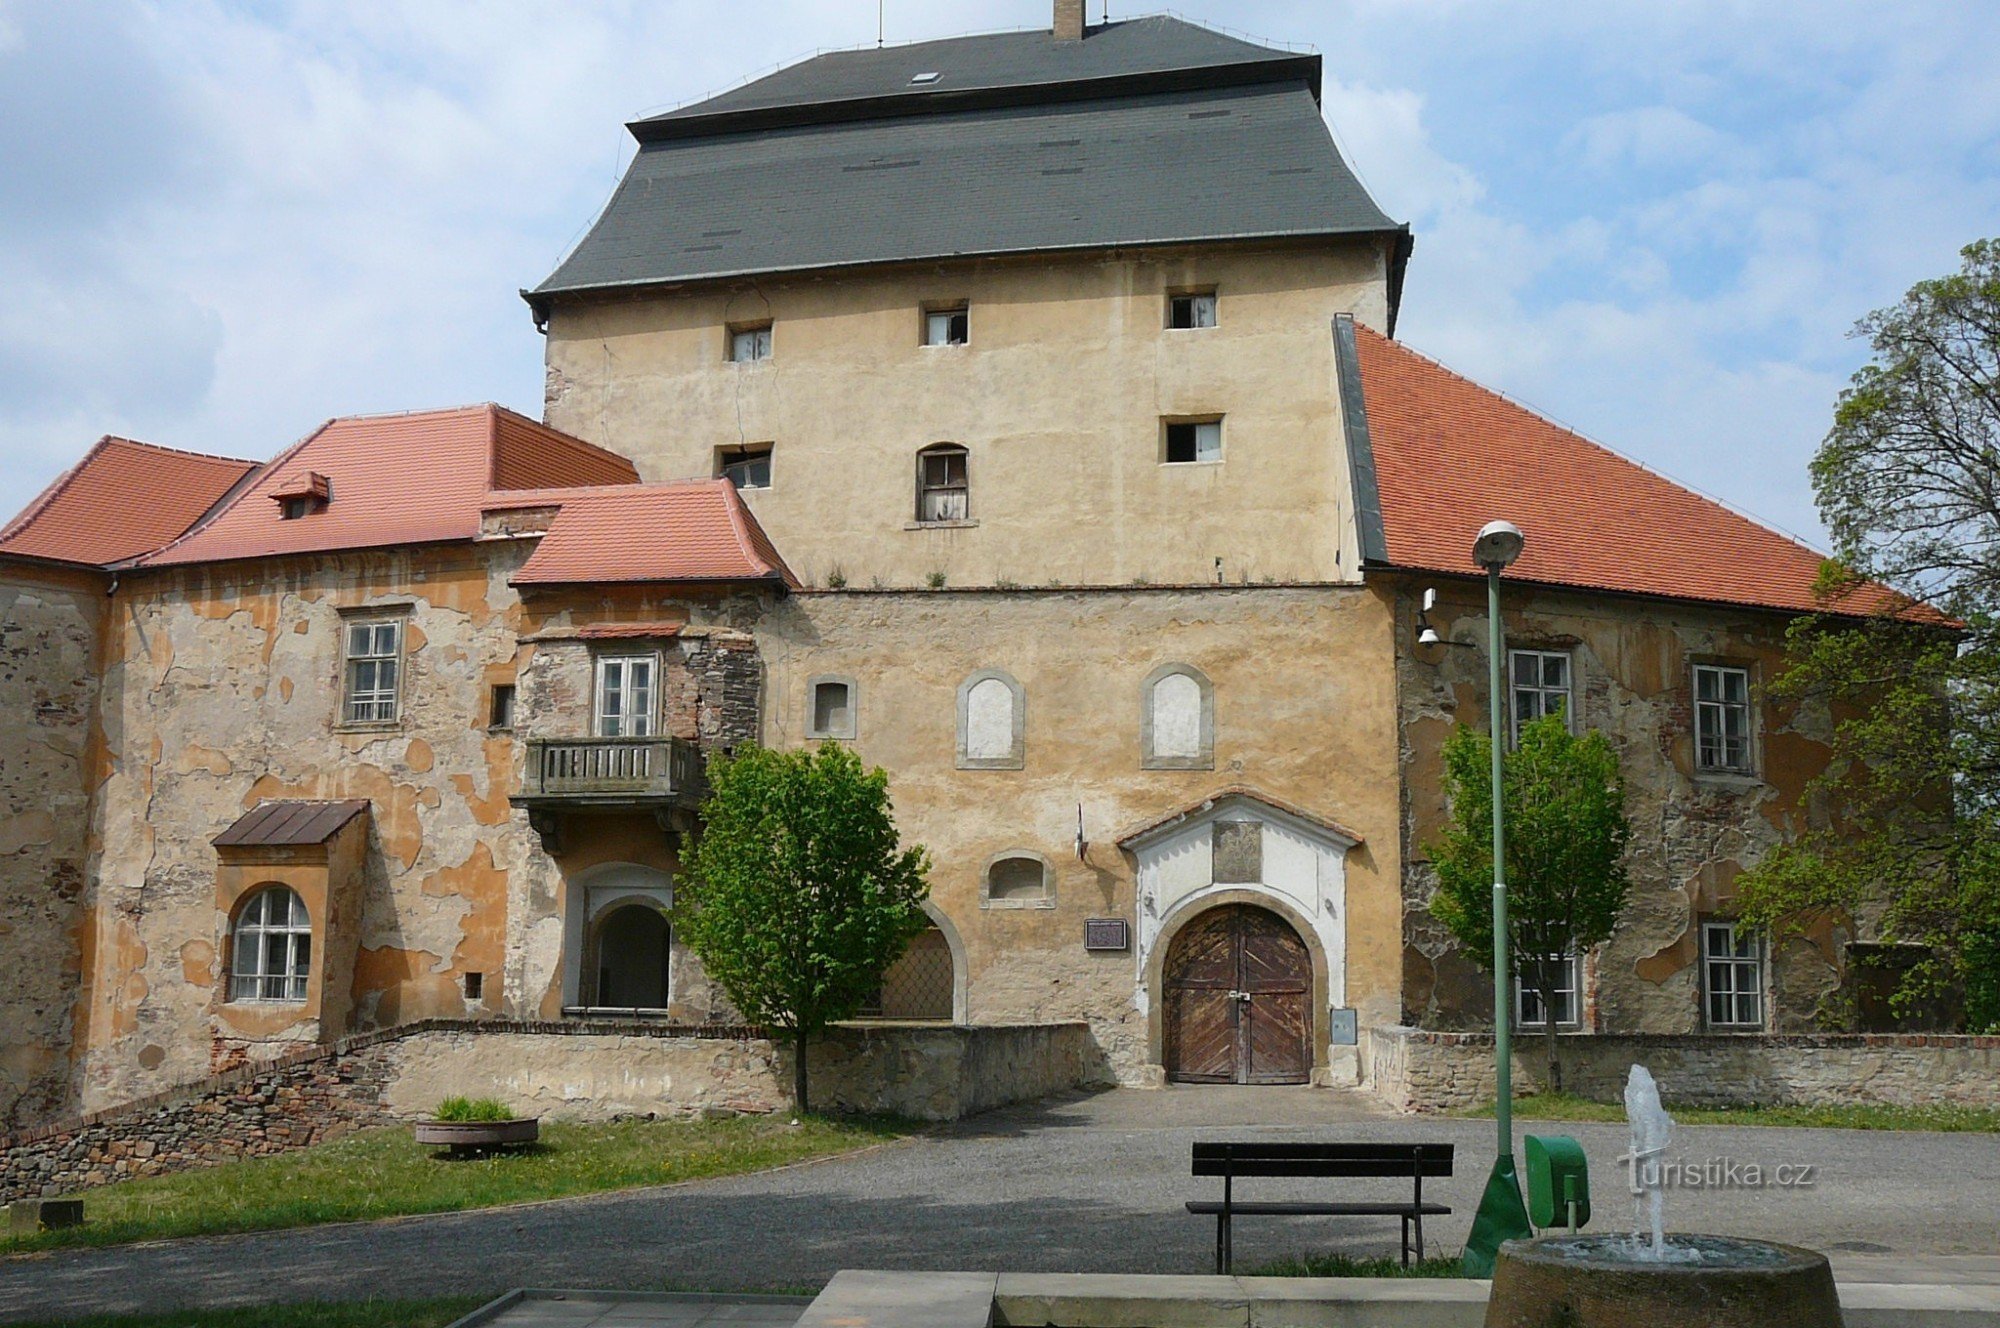 Miroslav Castle